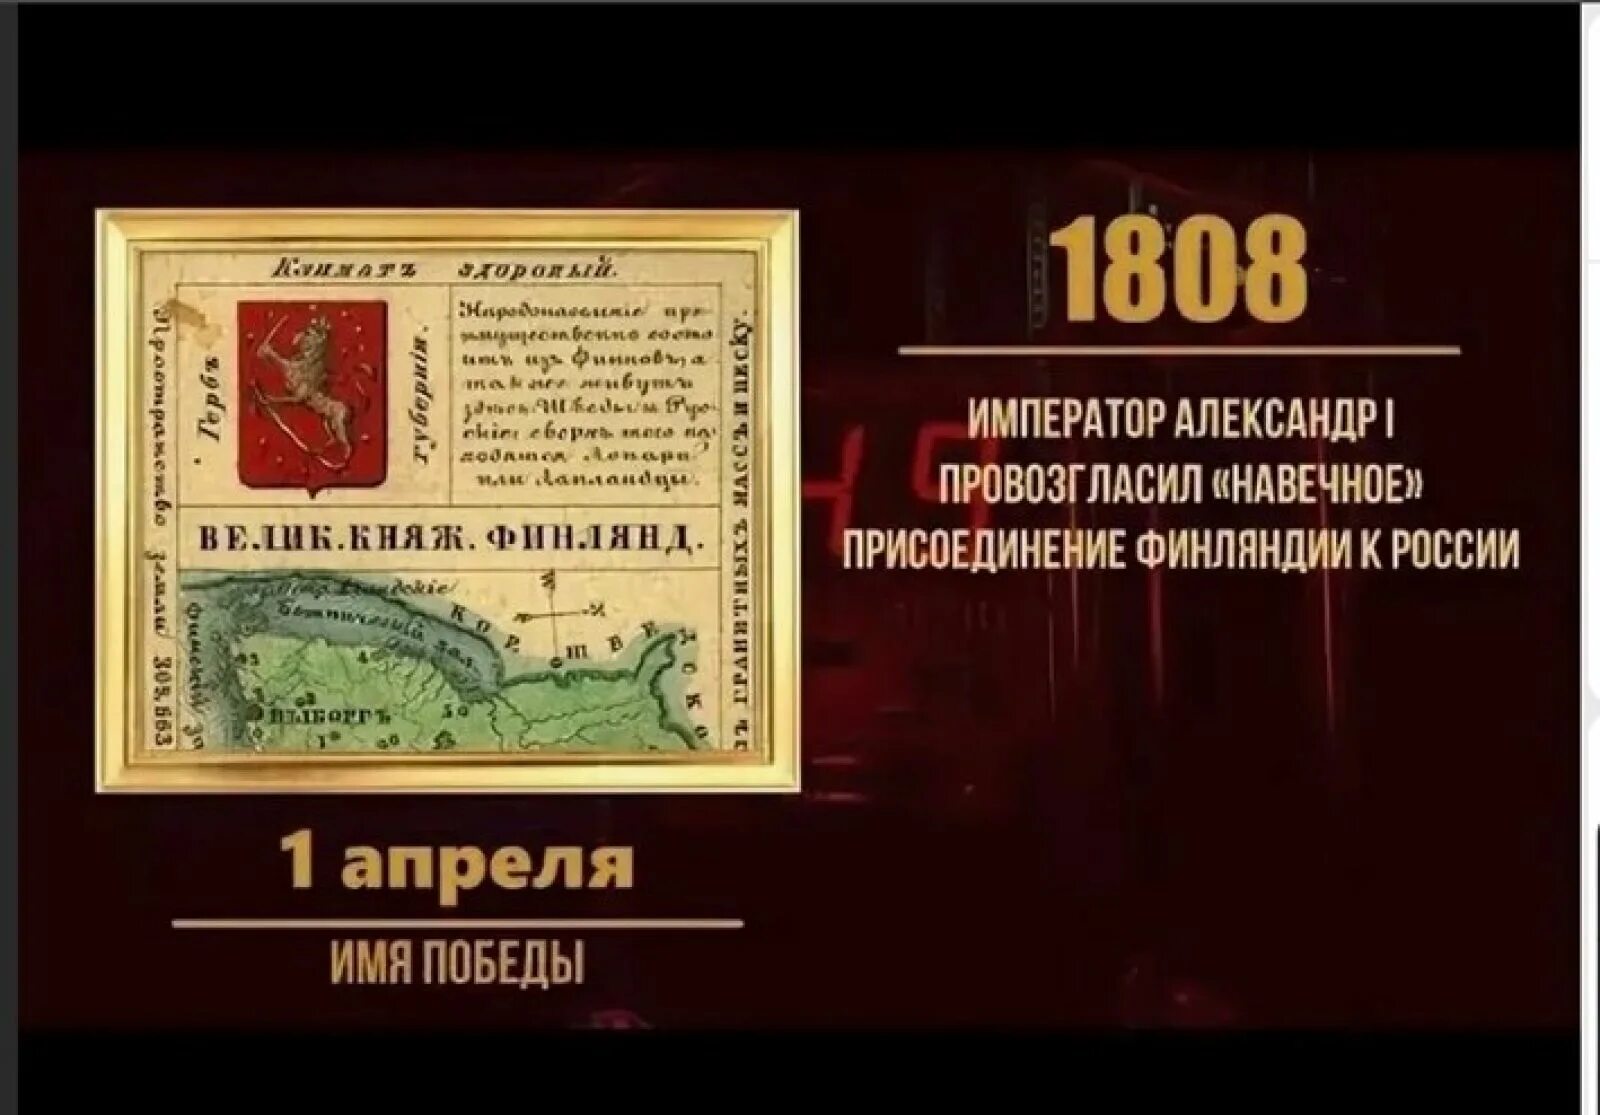 Присоединение Финляндии к России. 1808 Год в истории России.